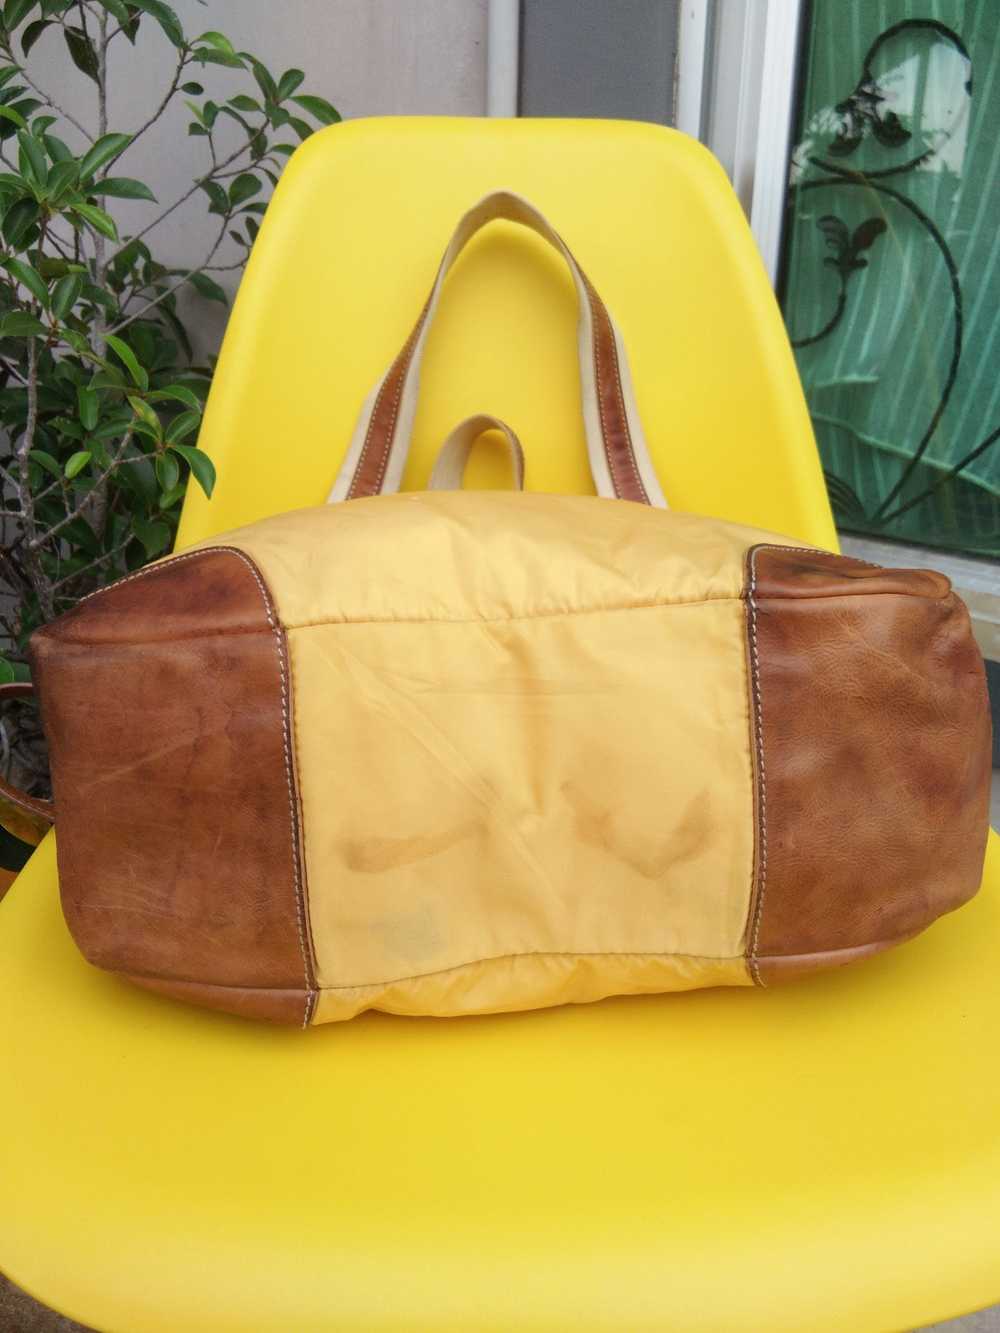 Authentic × Prada Authentic Prada Bag Tote Bag - image 3